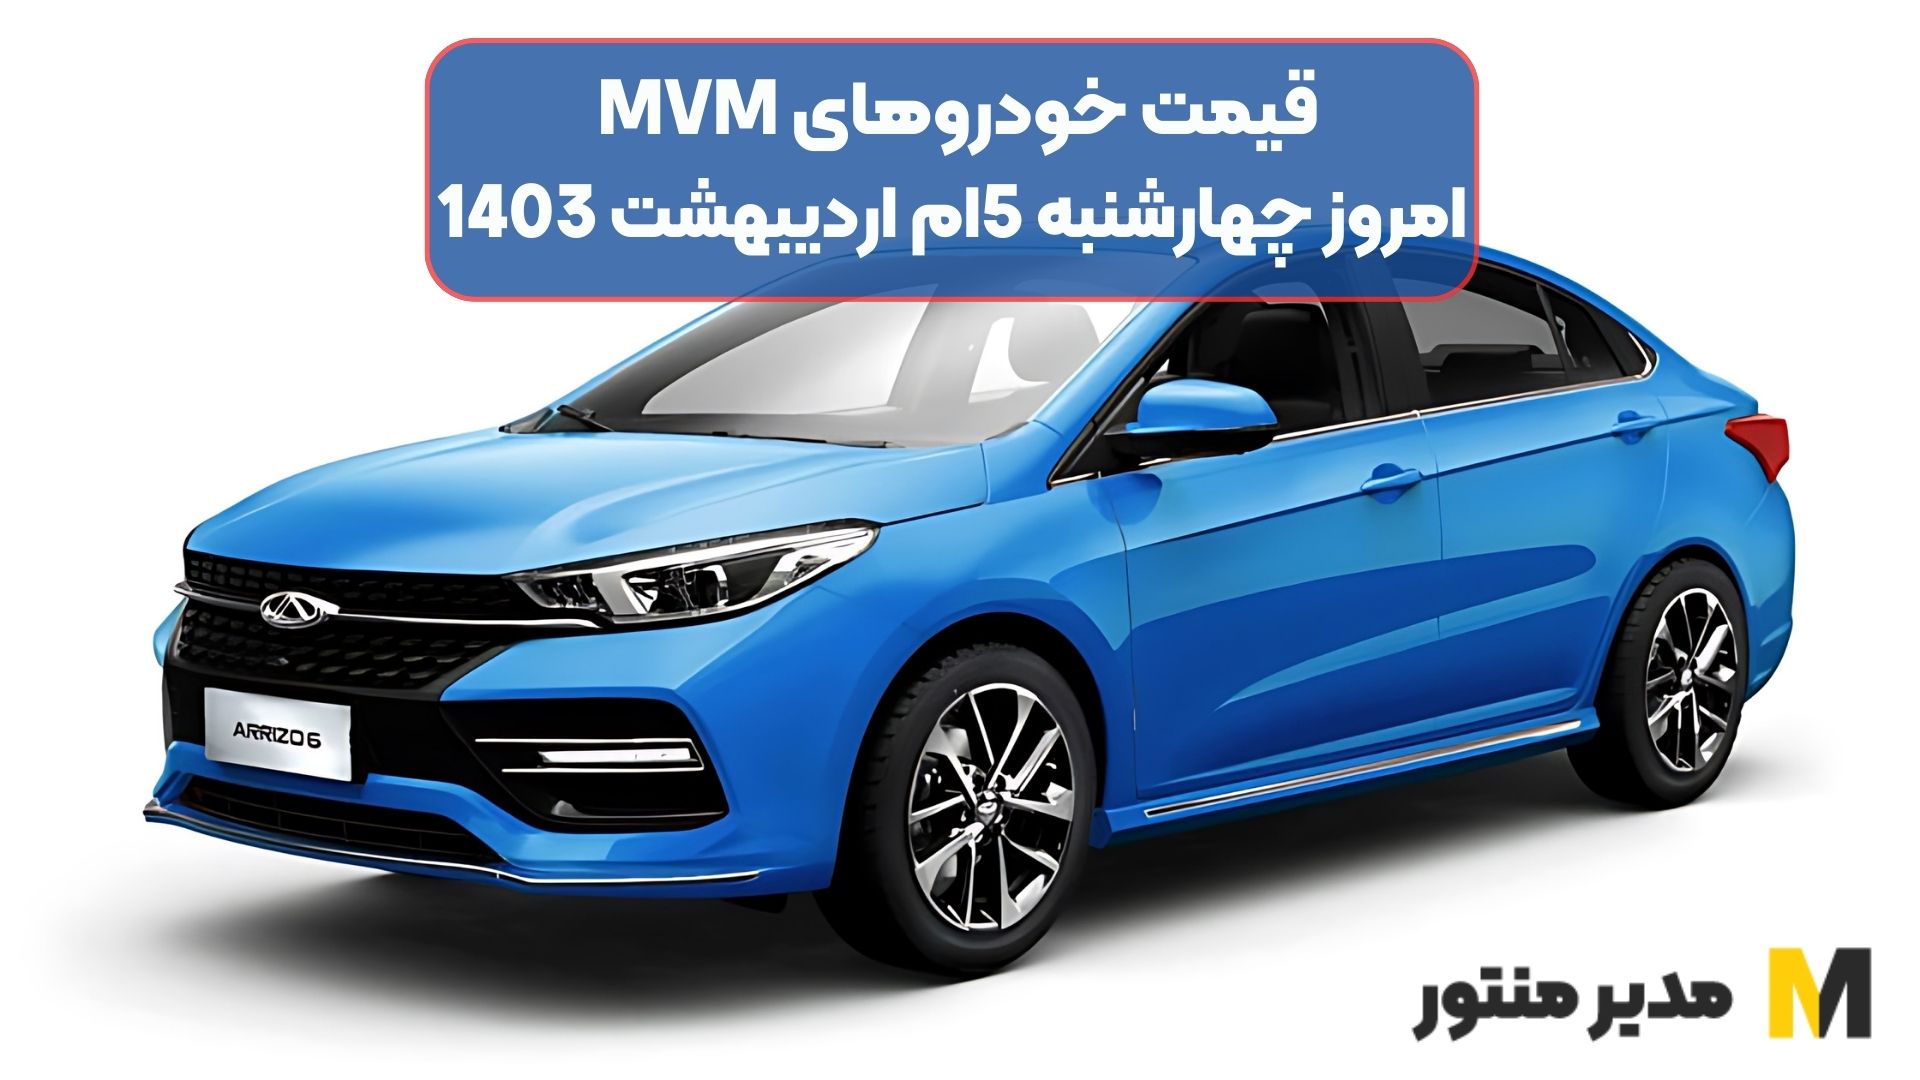 قیمت خودروهای MVM امروز چهارشنبه 5ام اردیبهشت 1403